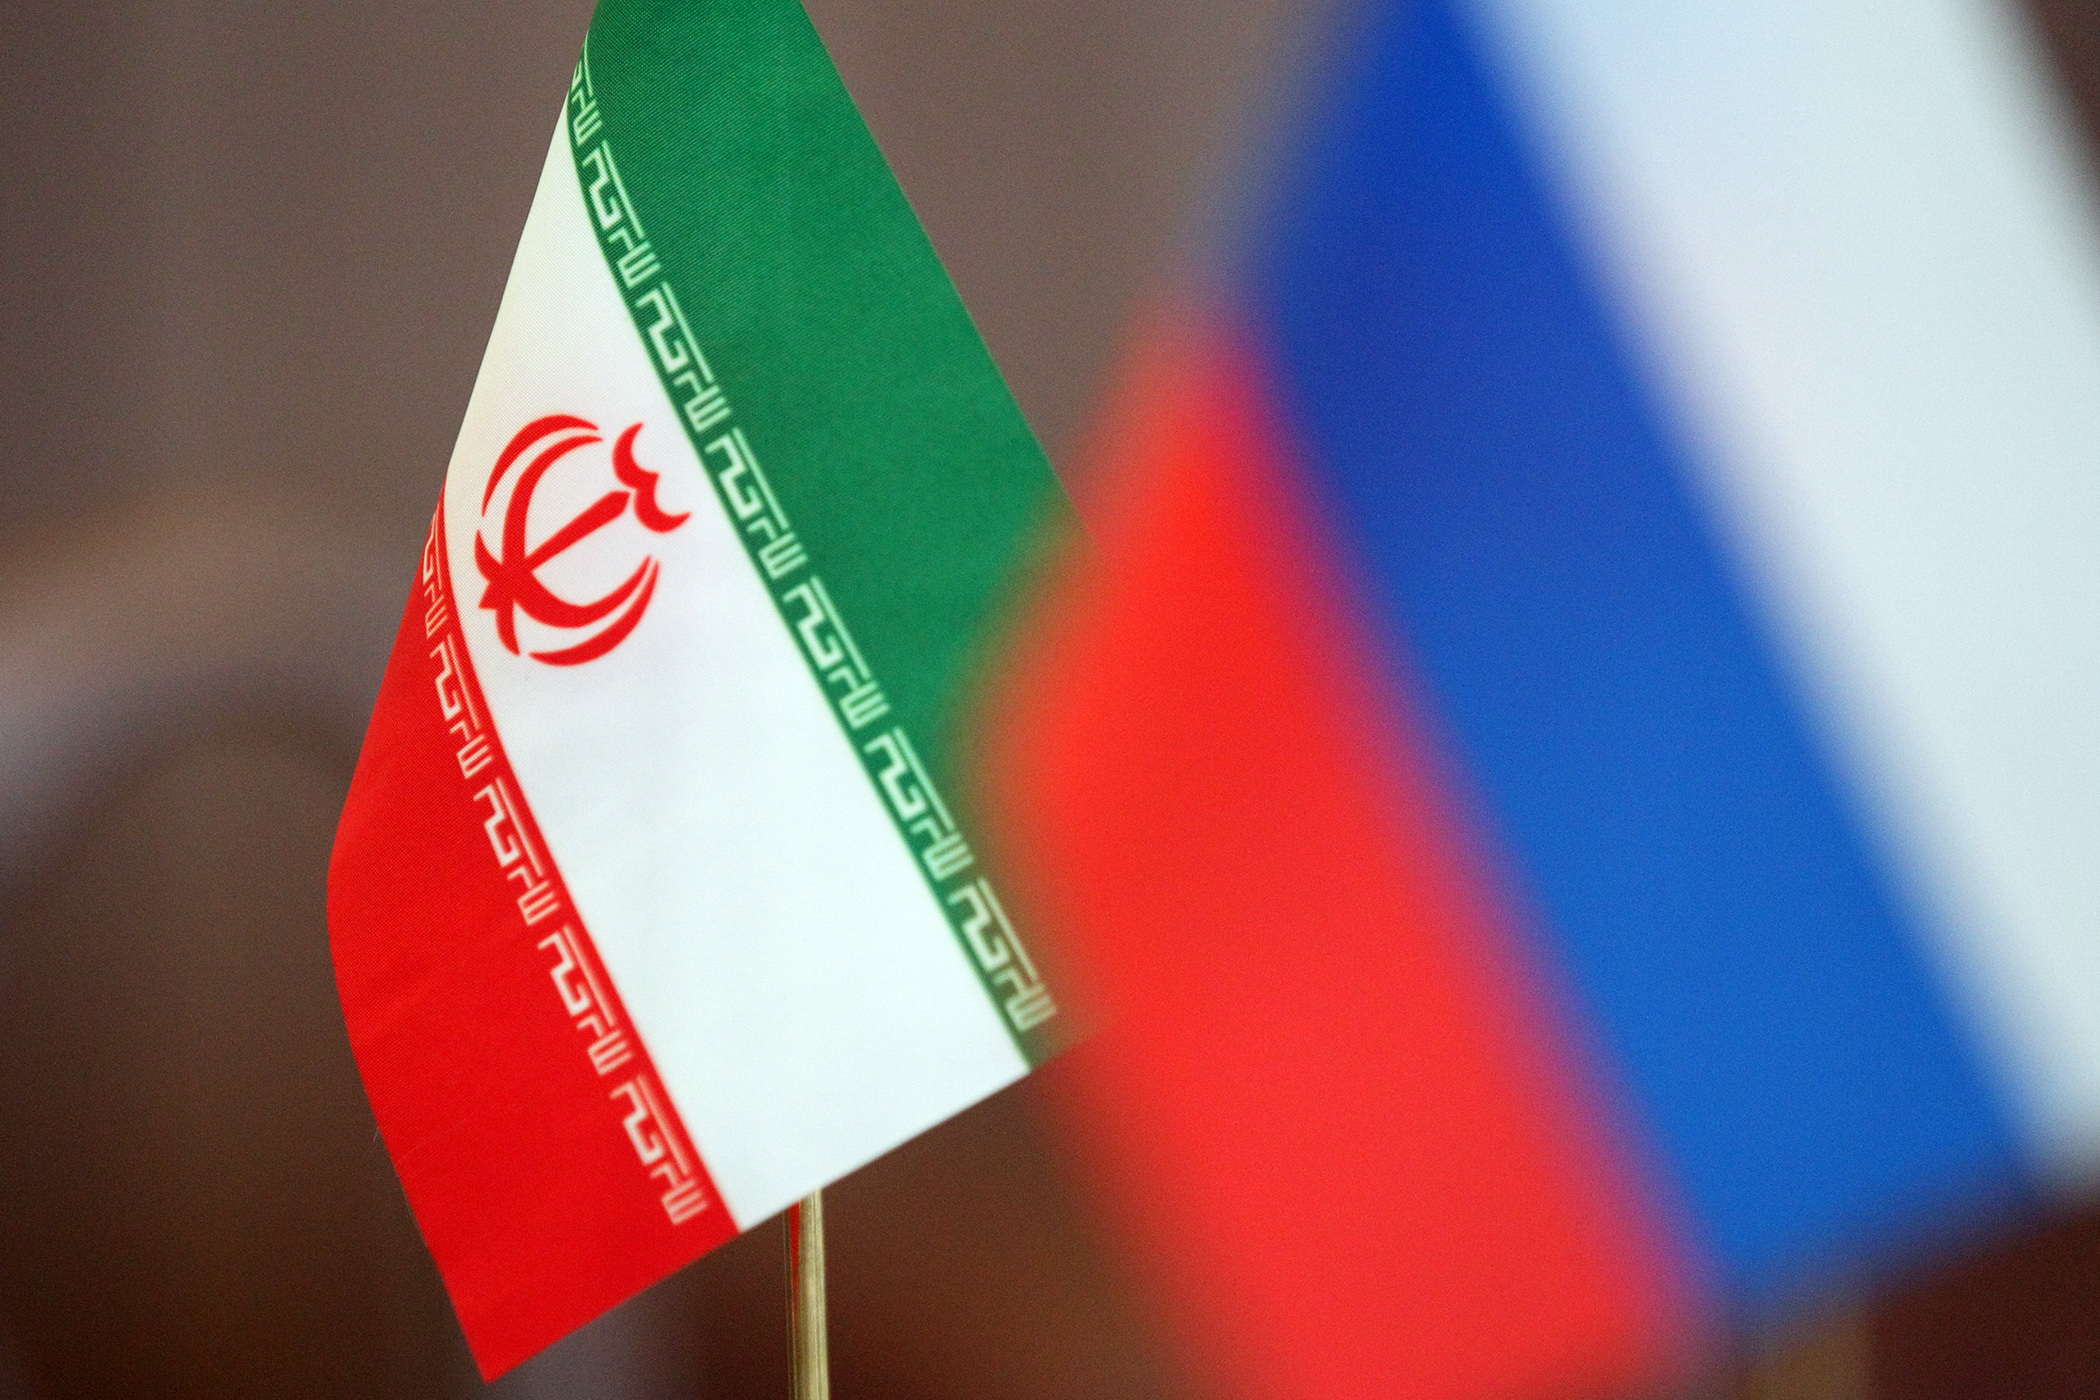 Milliyet. Իրանը՝ ՌԴ-ի տարածաշրջանային մրցակից